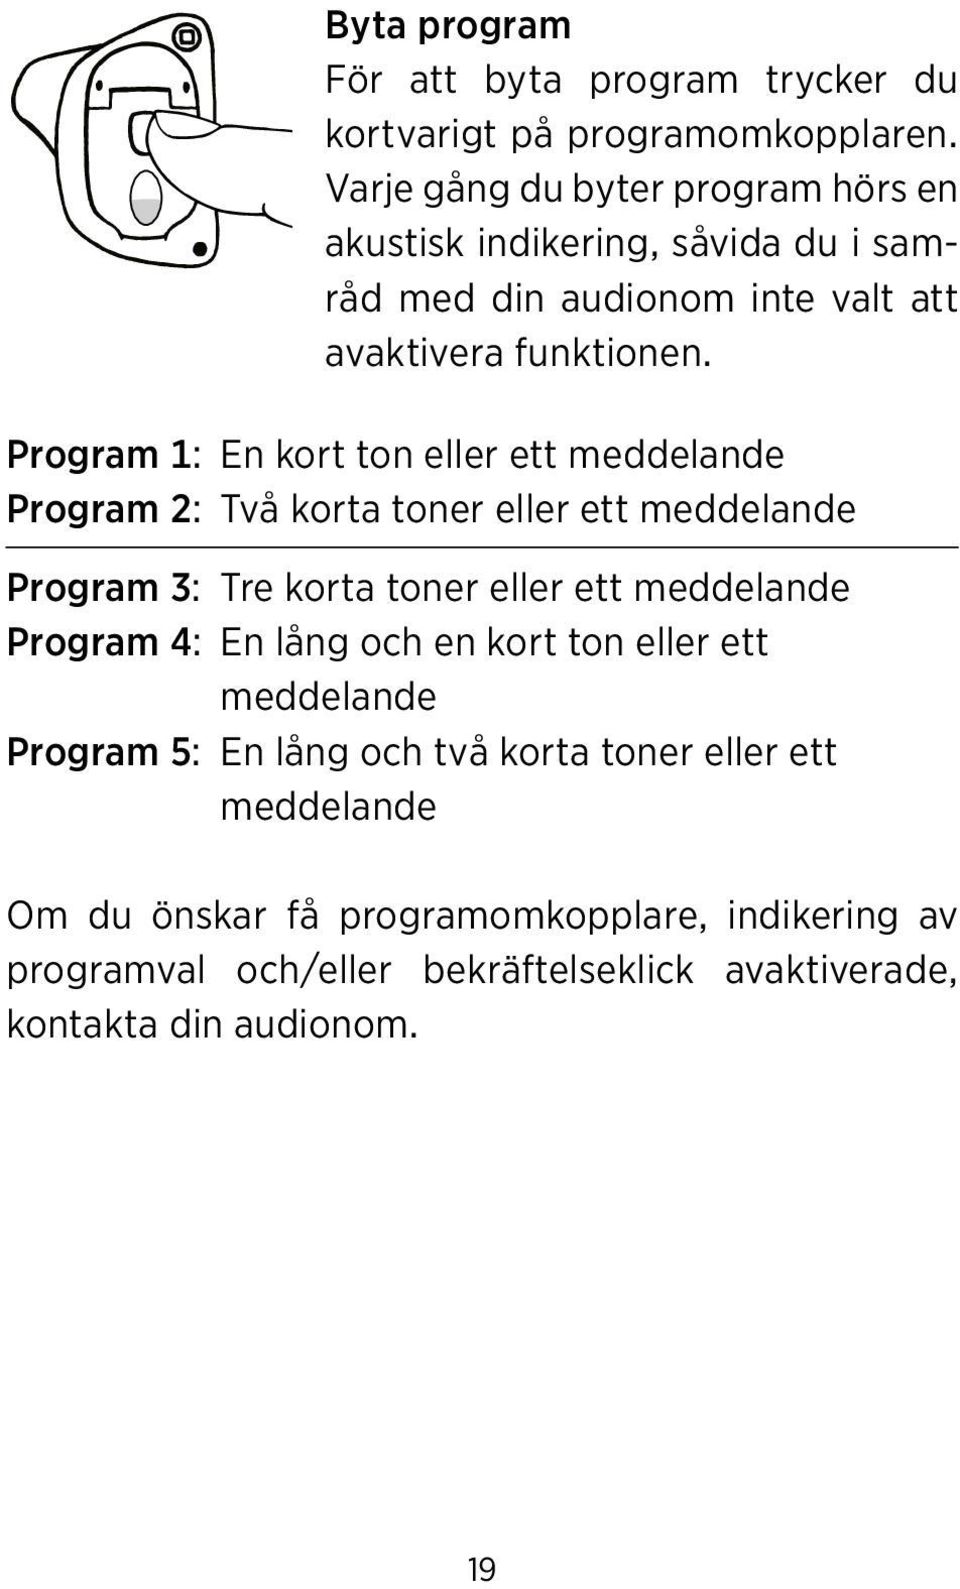 Program 1: En kort ton eller ett meddelande Program 2: Två korta toner eller ett meddelande Program 3: Tre korta toner eller ett meddelande Program